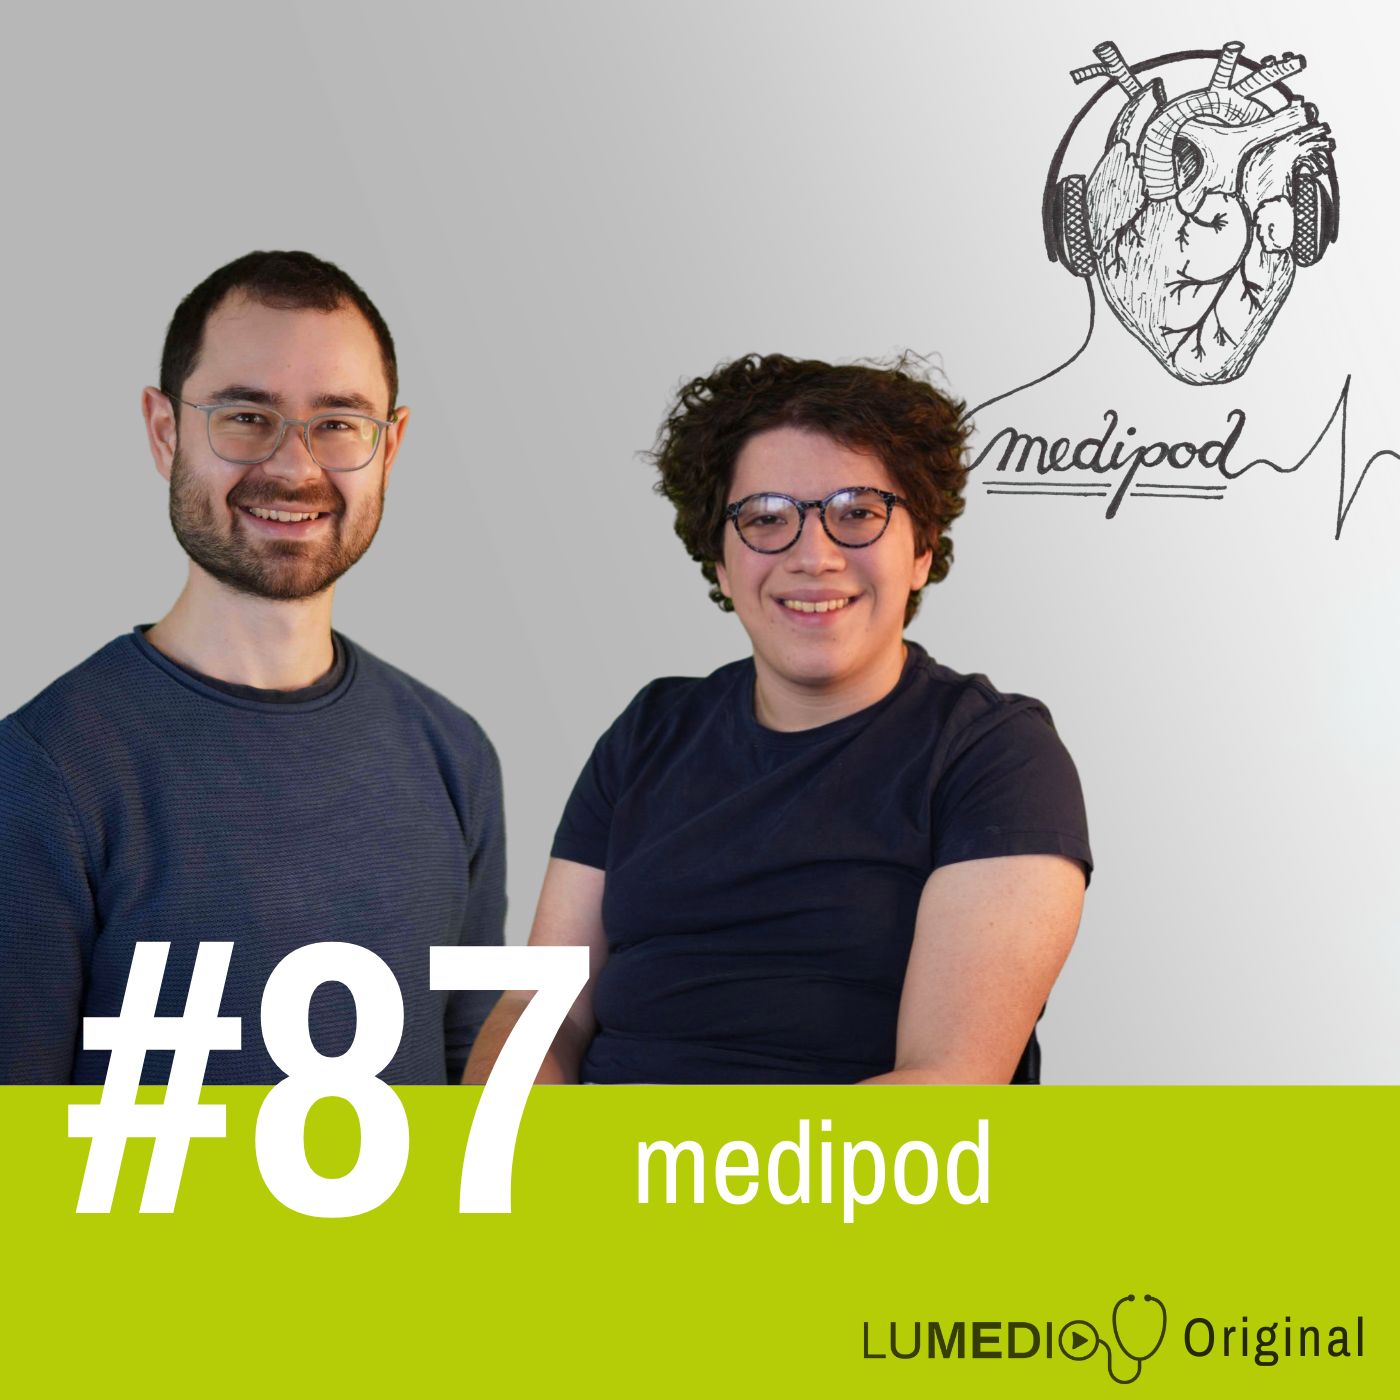 #87 Willkommen bei lumedio - Alles über unsere neue Marke